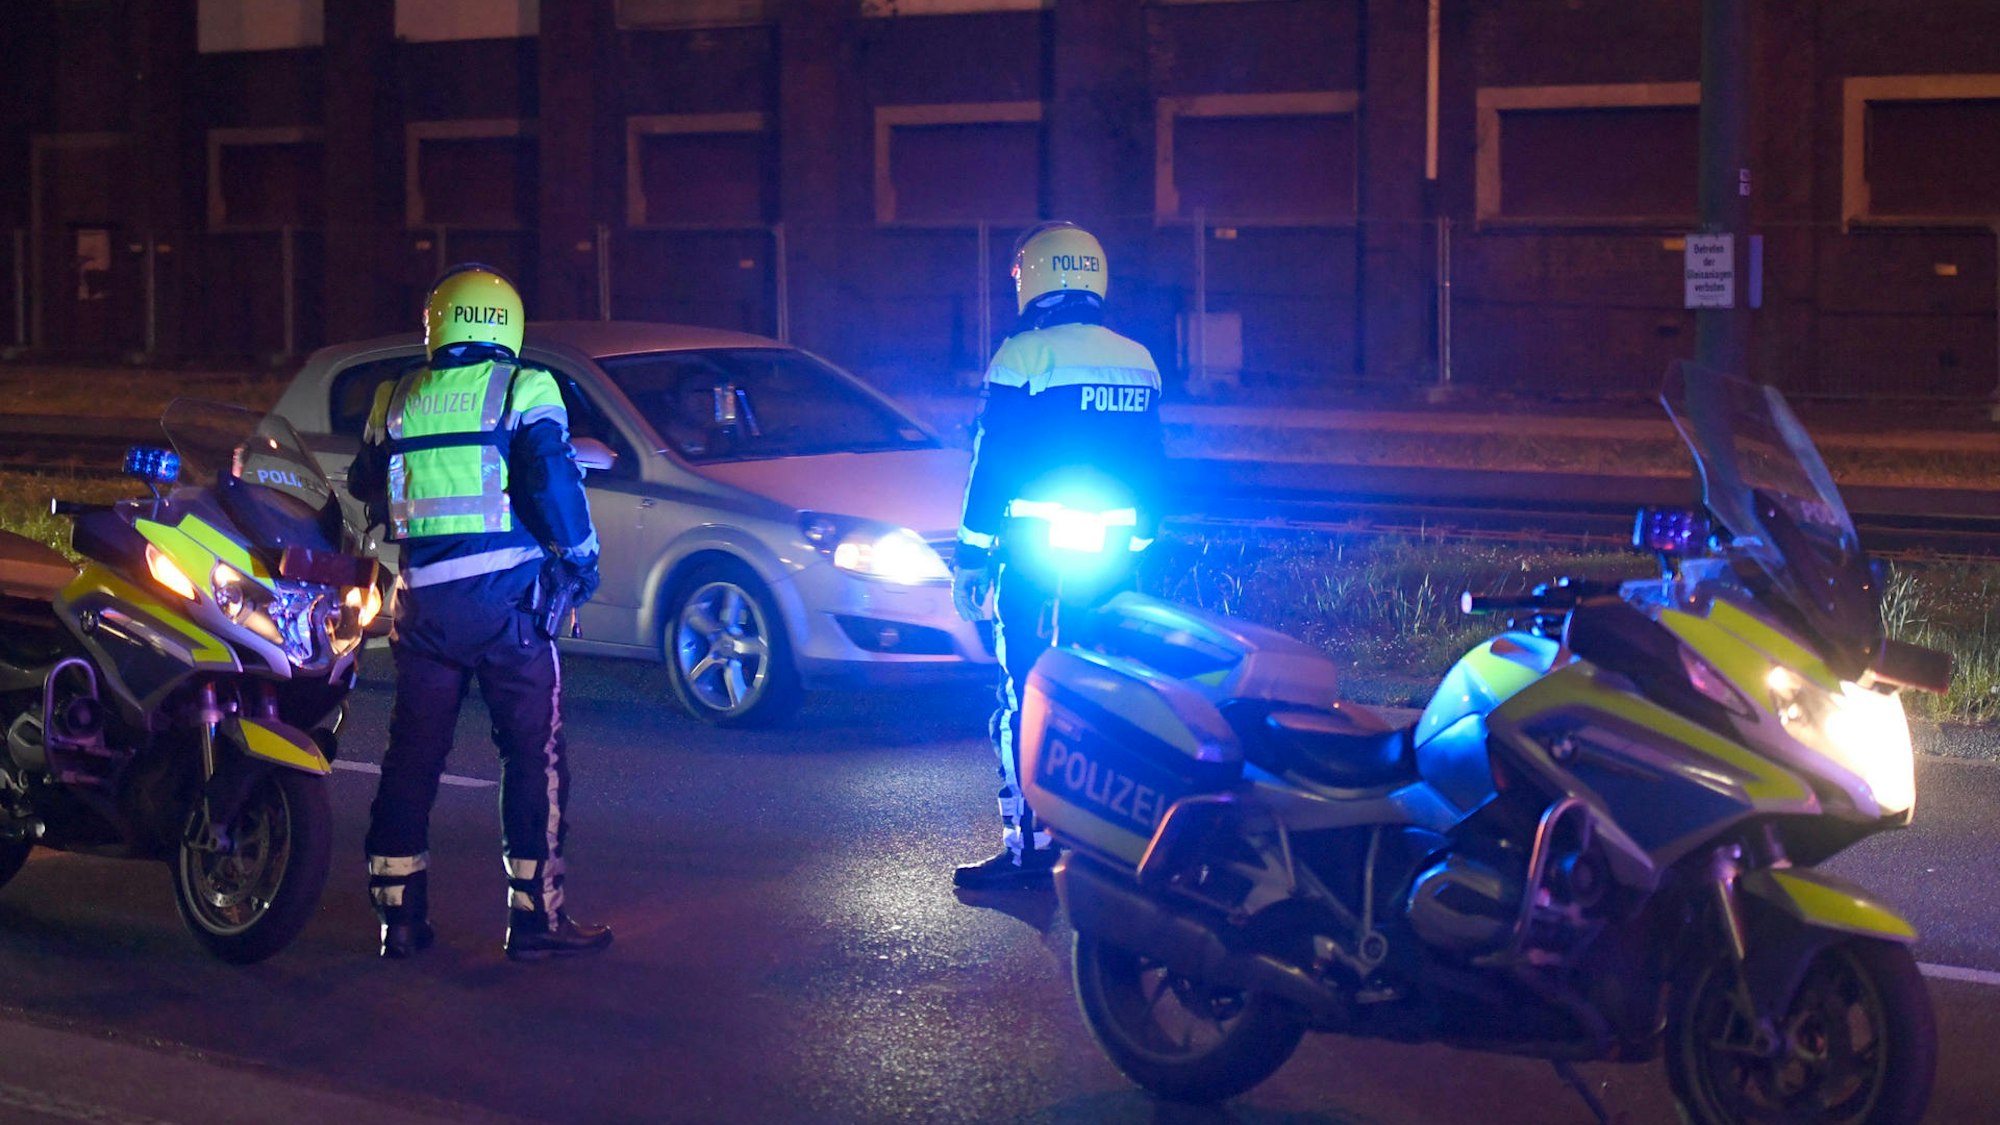 Zwei Polizisten stehen neben ihren Motorrädern und halten ein Auto an.